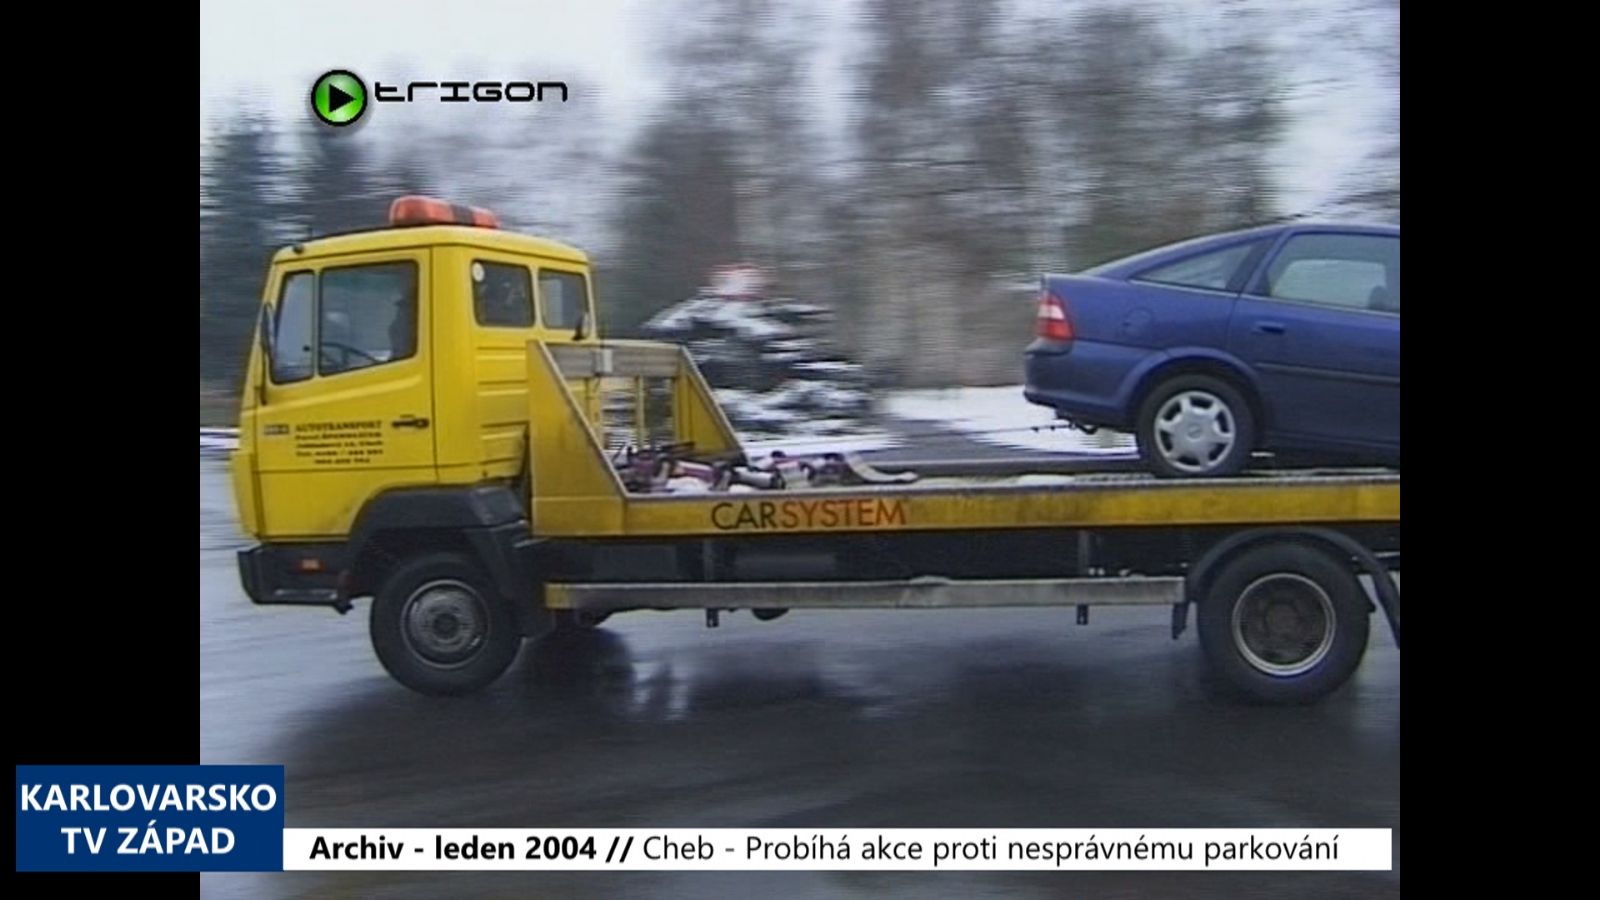 2004 – Cheb: Probíhá akce proti nesprávnému parkování (TV Západ)